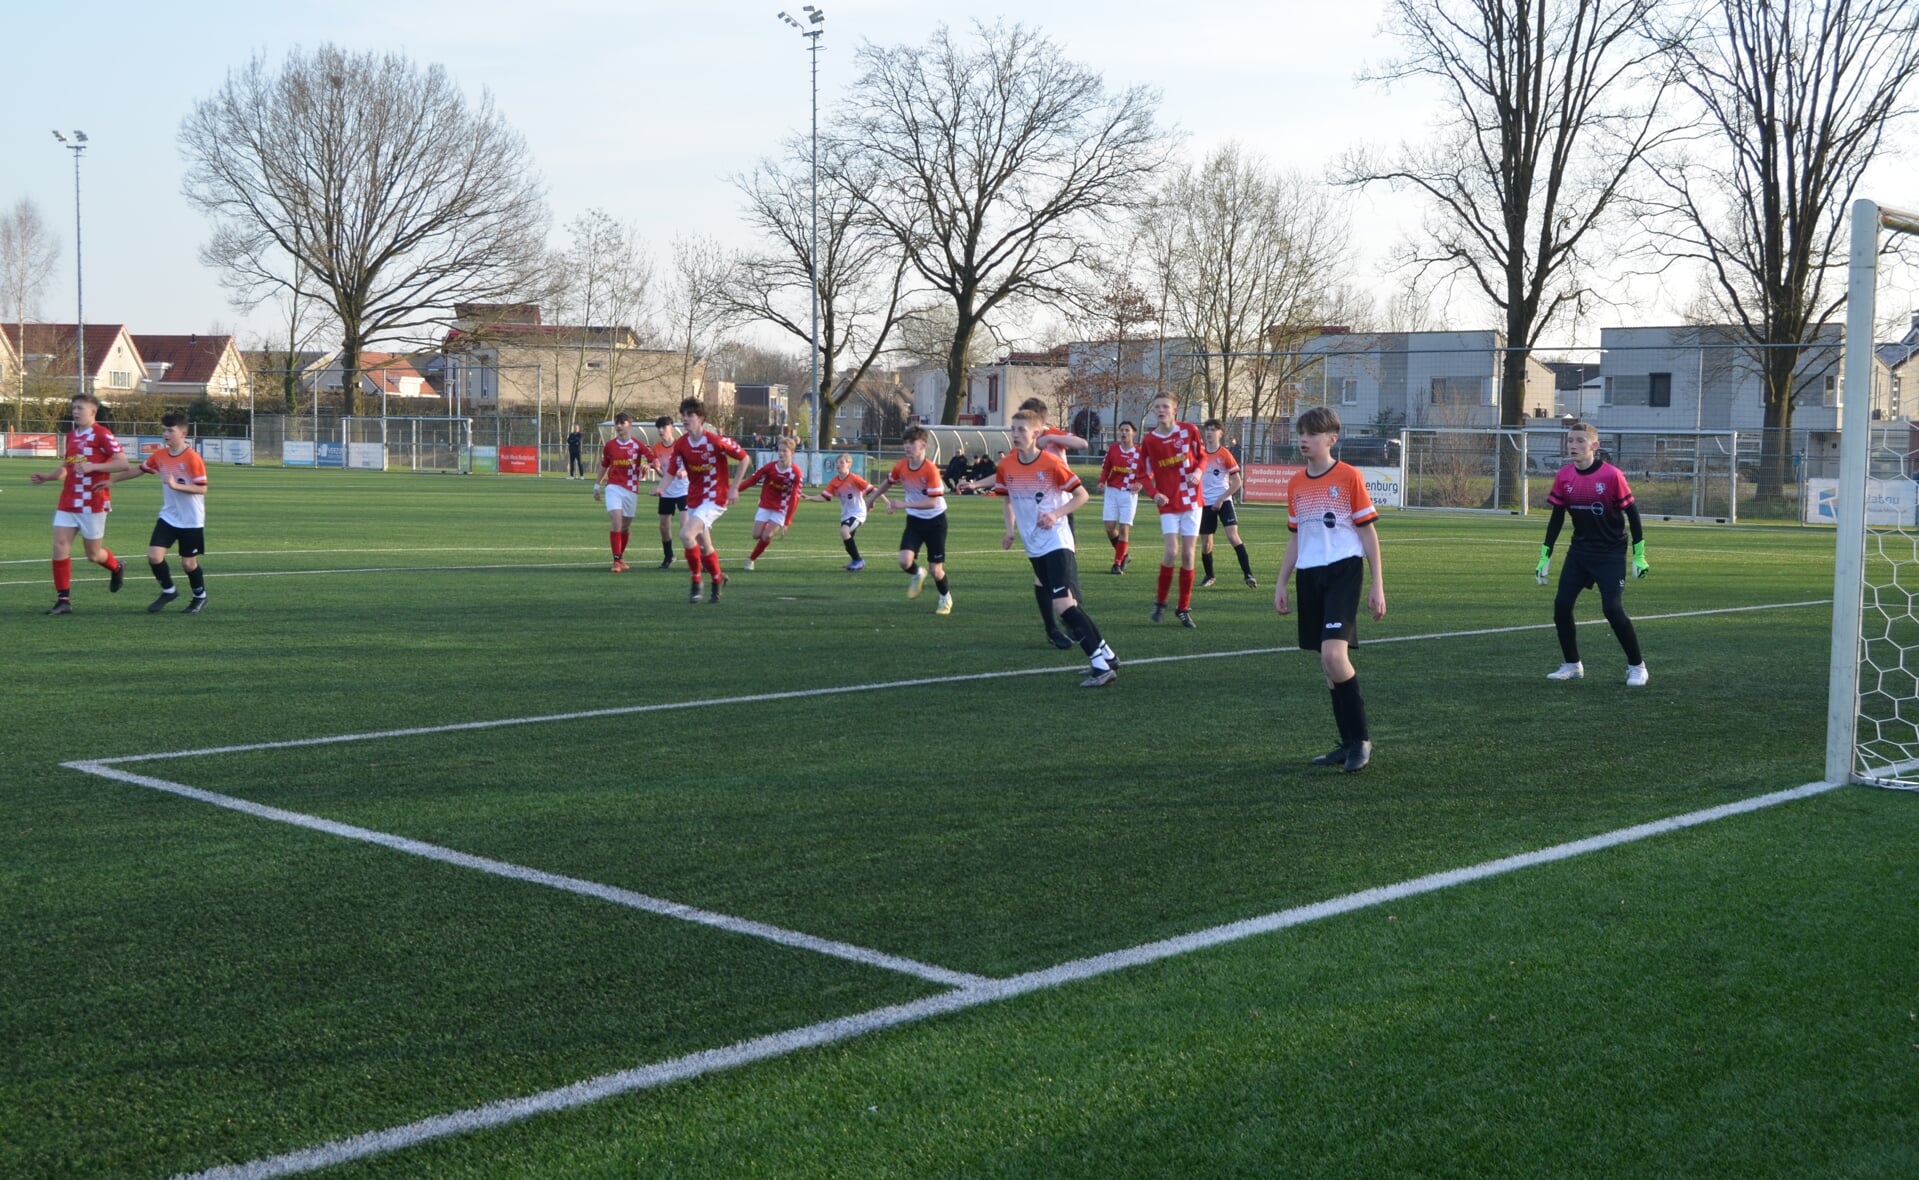 Voetballen tegen een Engelse club, dat maakt een wedstrijd extra spannend. Drie jeugdteams van RKSV Boxtel deden dit woensdagavond.